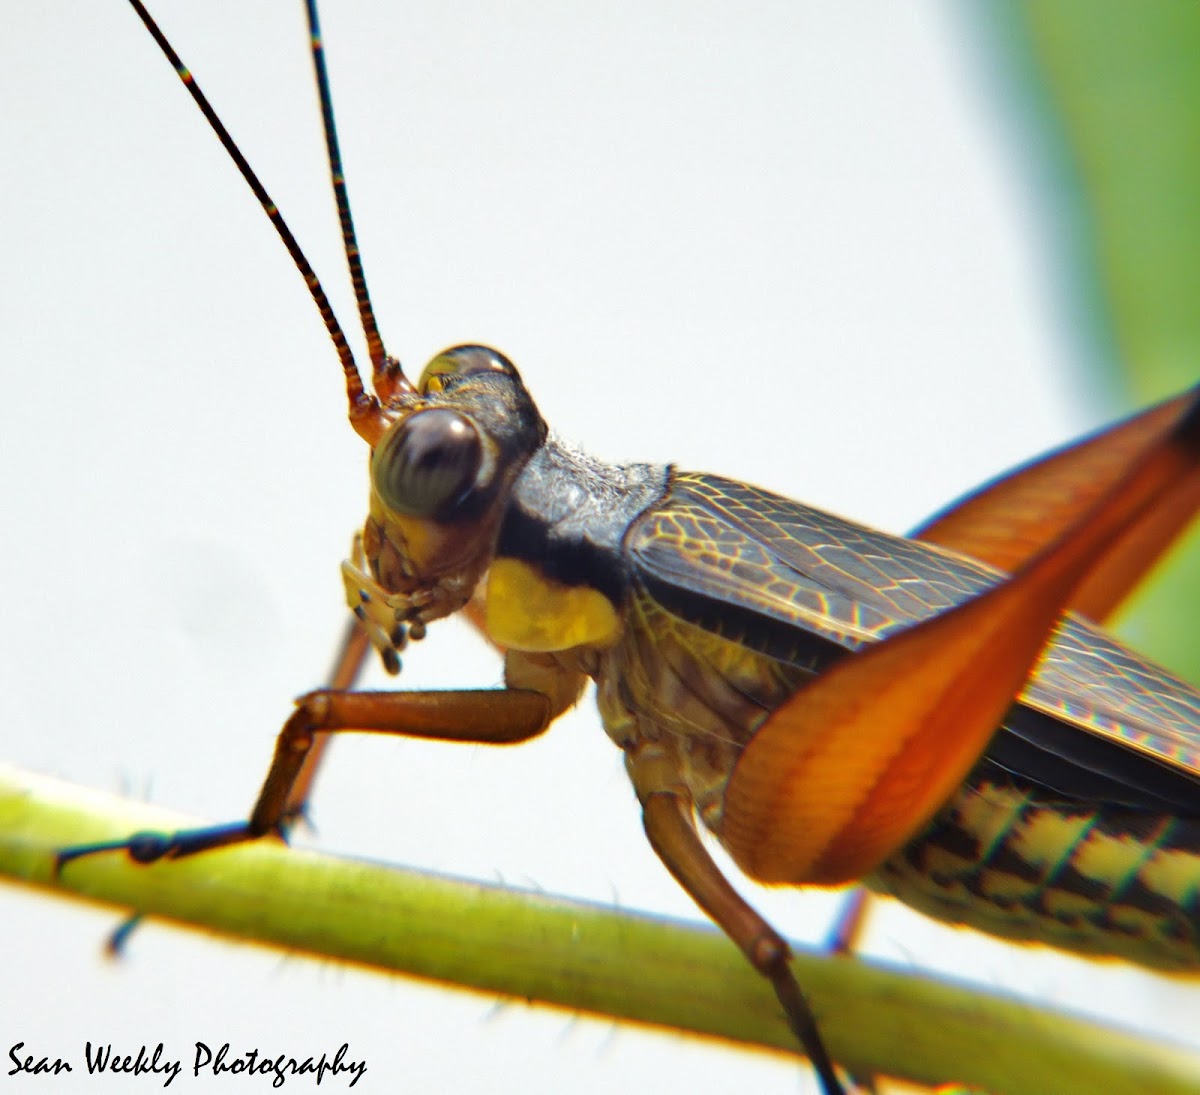 Unknown Grasshopper